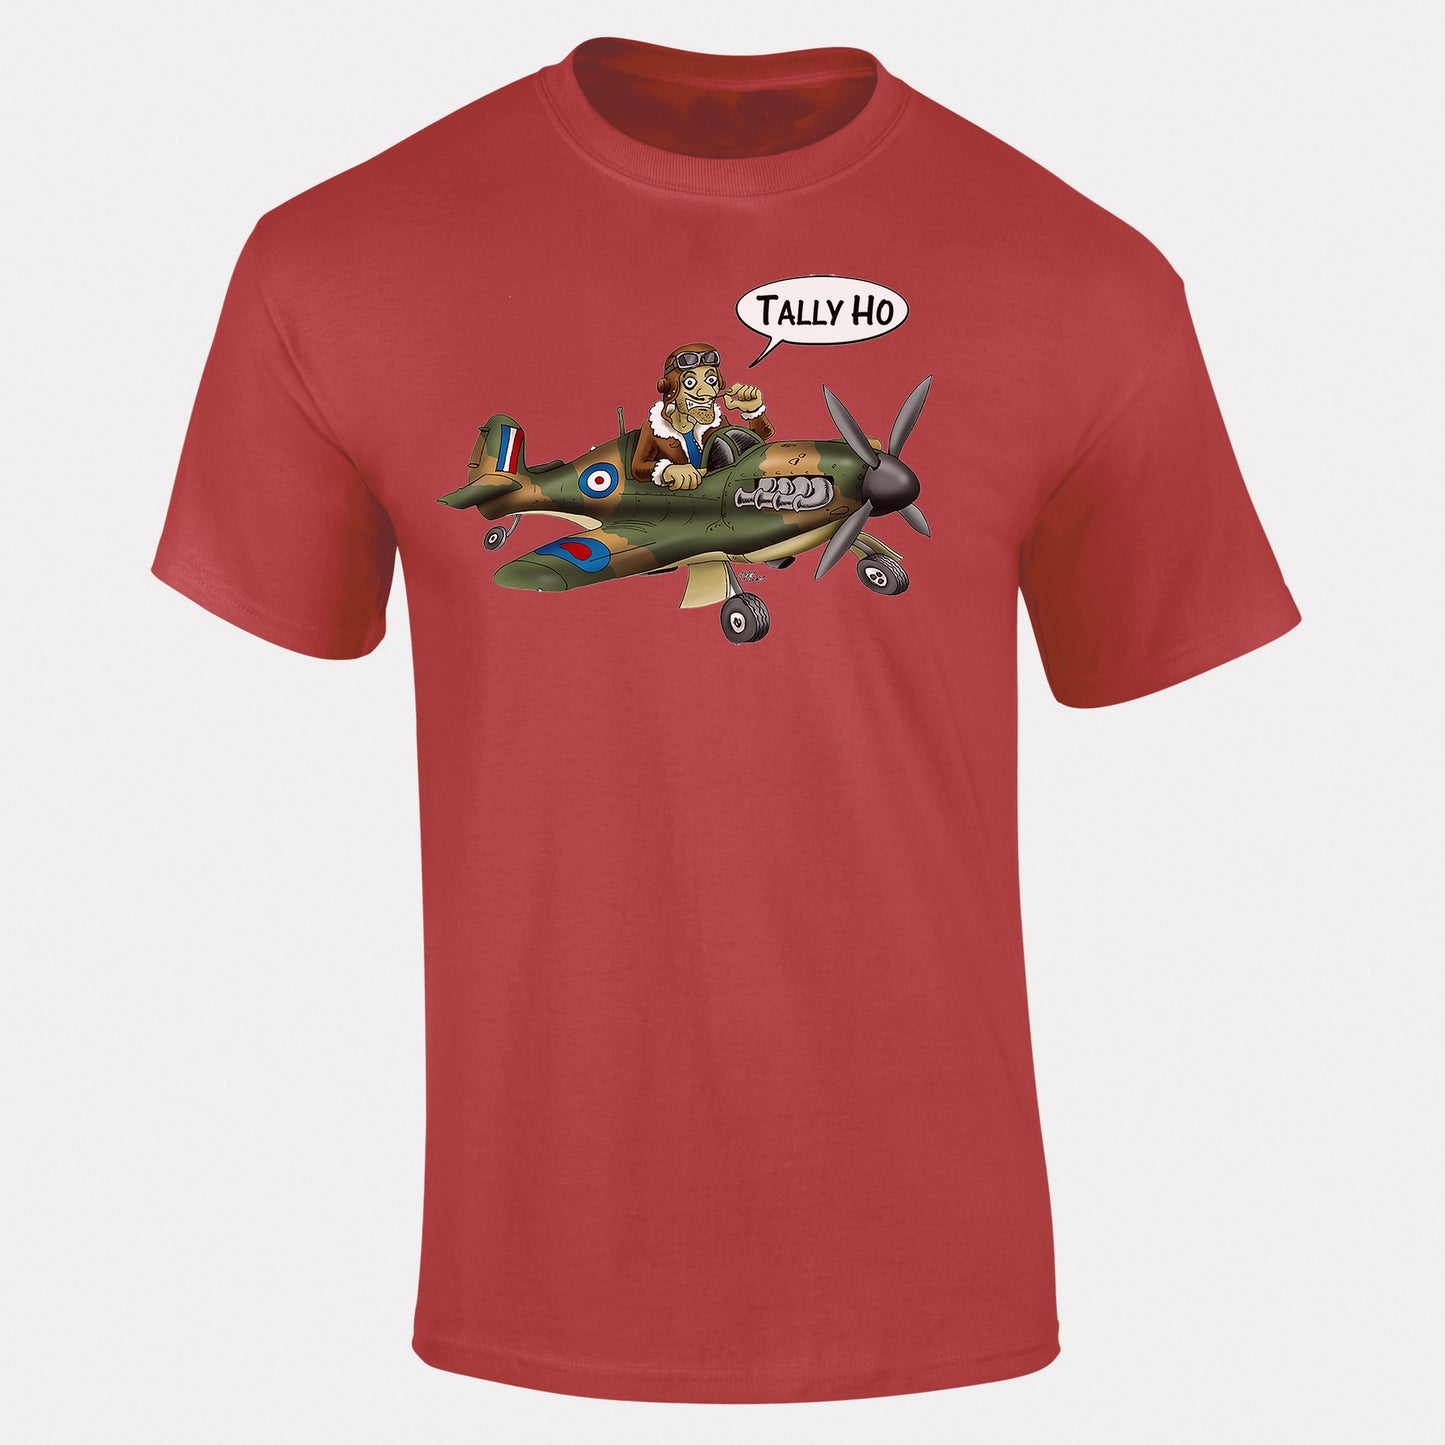 Tally Ho Spitfire T-Shirt